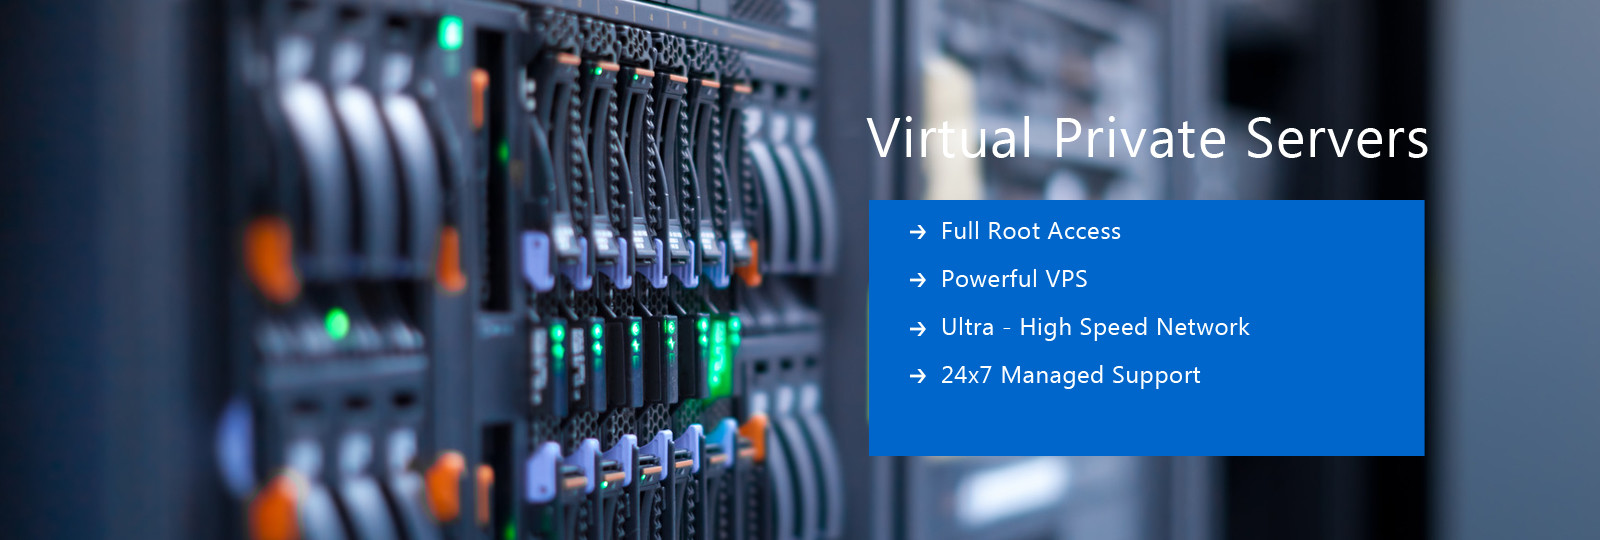 vej Sikker Kænguru Cheap Windows VPS Server Hosting – Now Within Reach For Enterprises